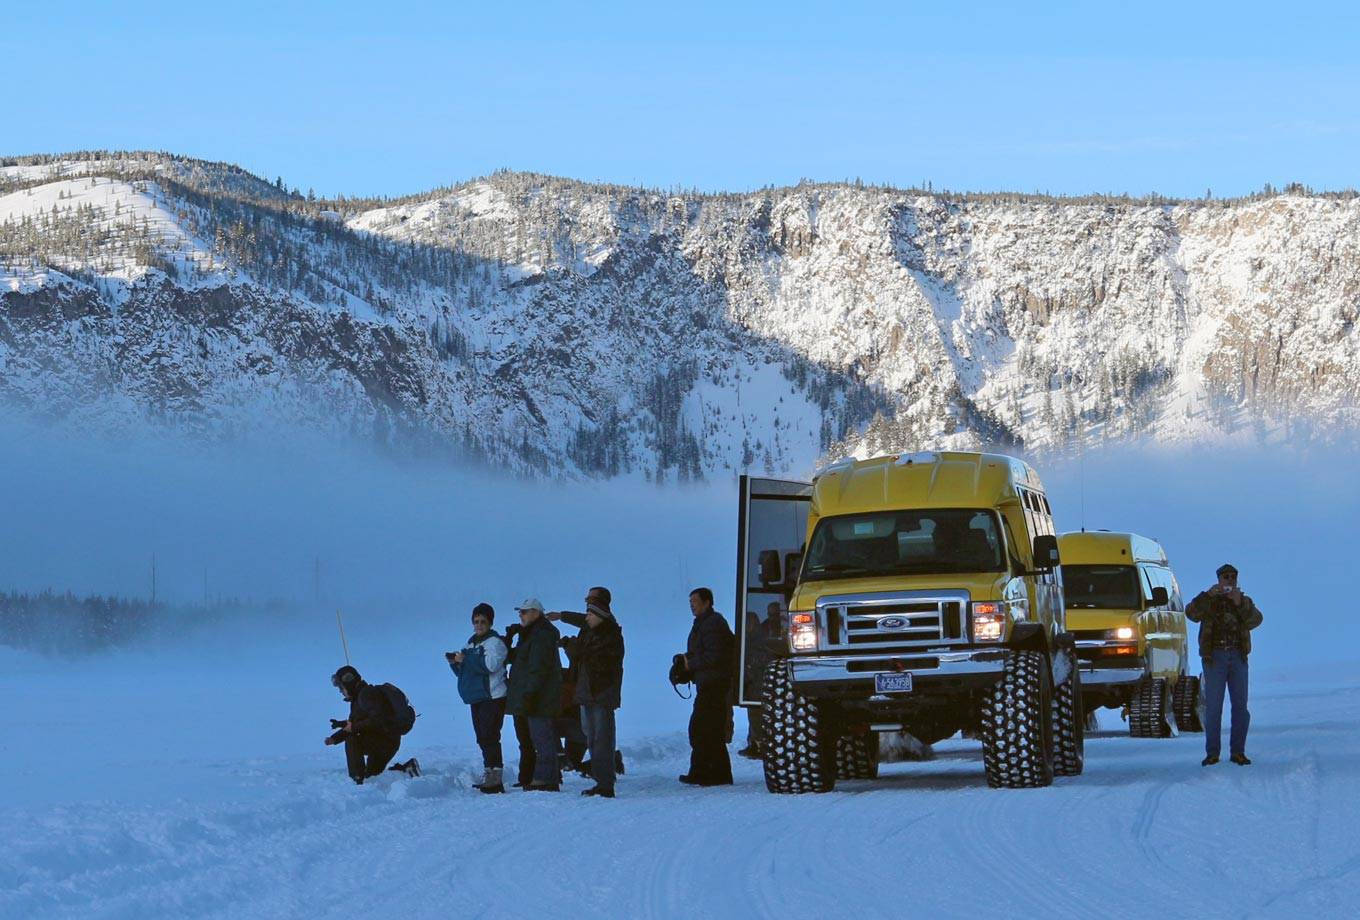 Yellowstone snowcoach tours